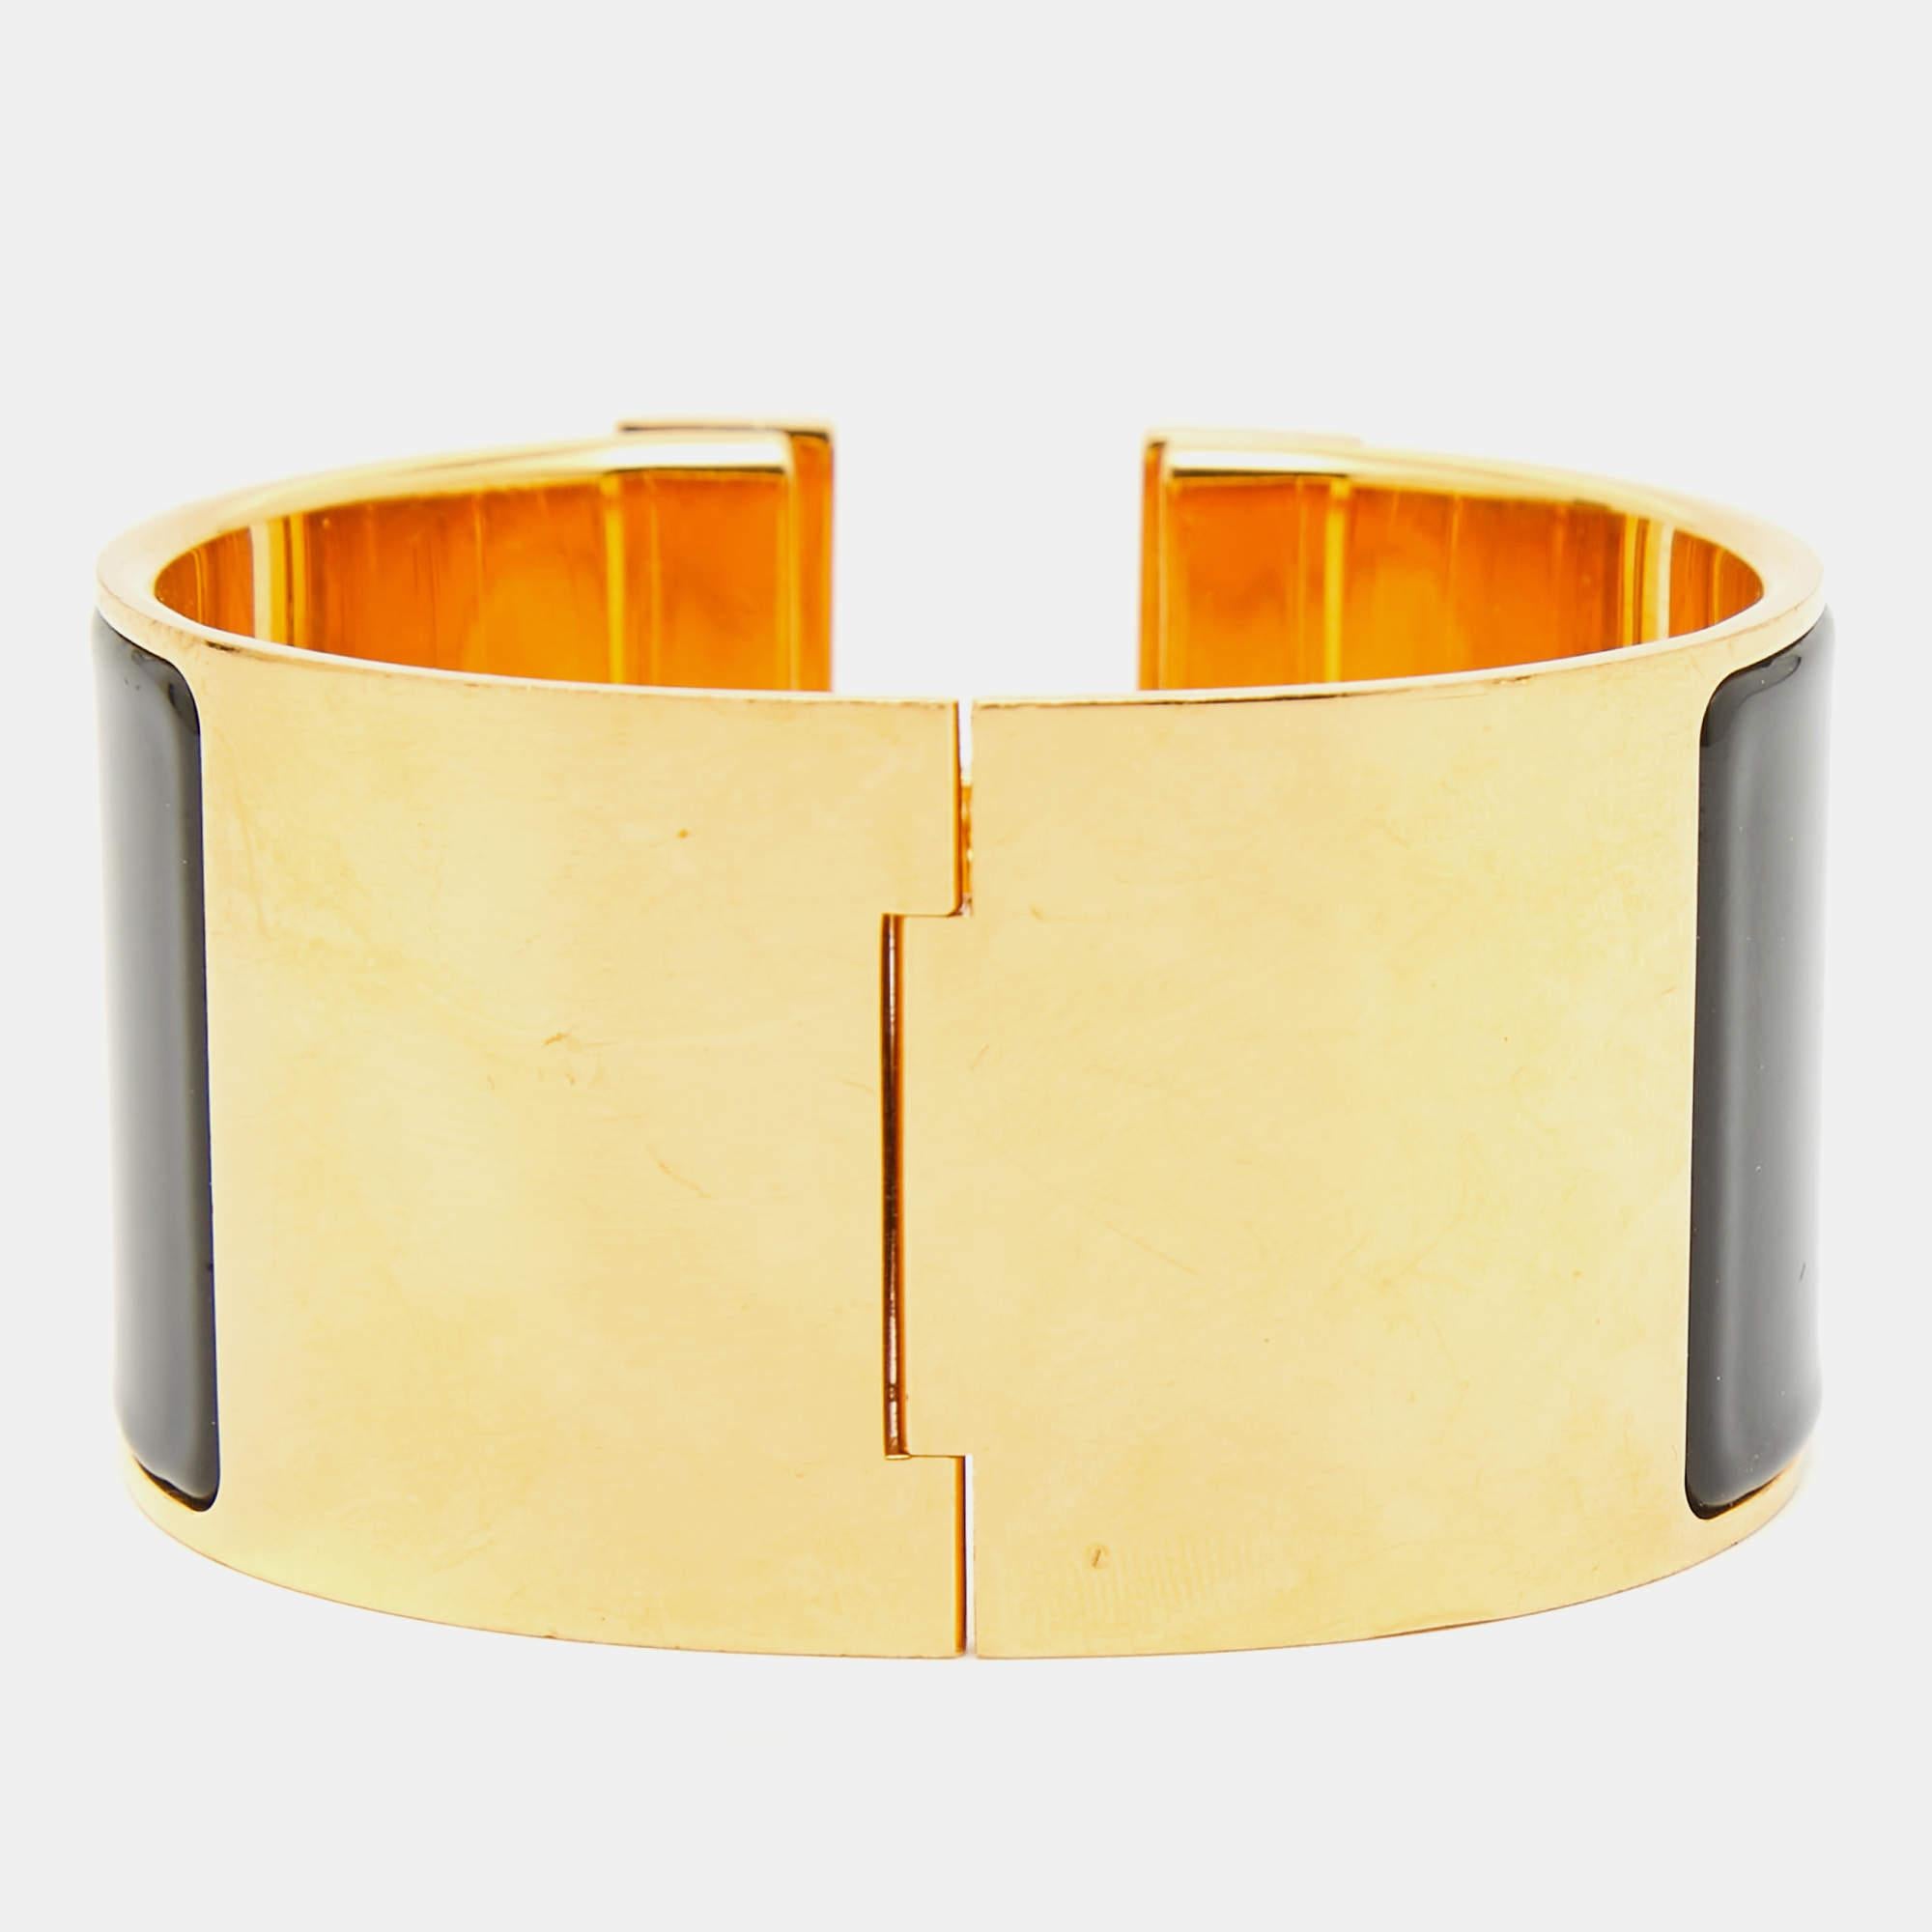 Le bracelet Clic Clac H d'Hermès est un bijou exquis. Il présente un bracelet en émail brillant avec un fermoir en forme de H plaqué or, créant un contraste saisissant. Cet accessoire luxueux et élégant incarne le style intemporel et la